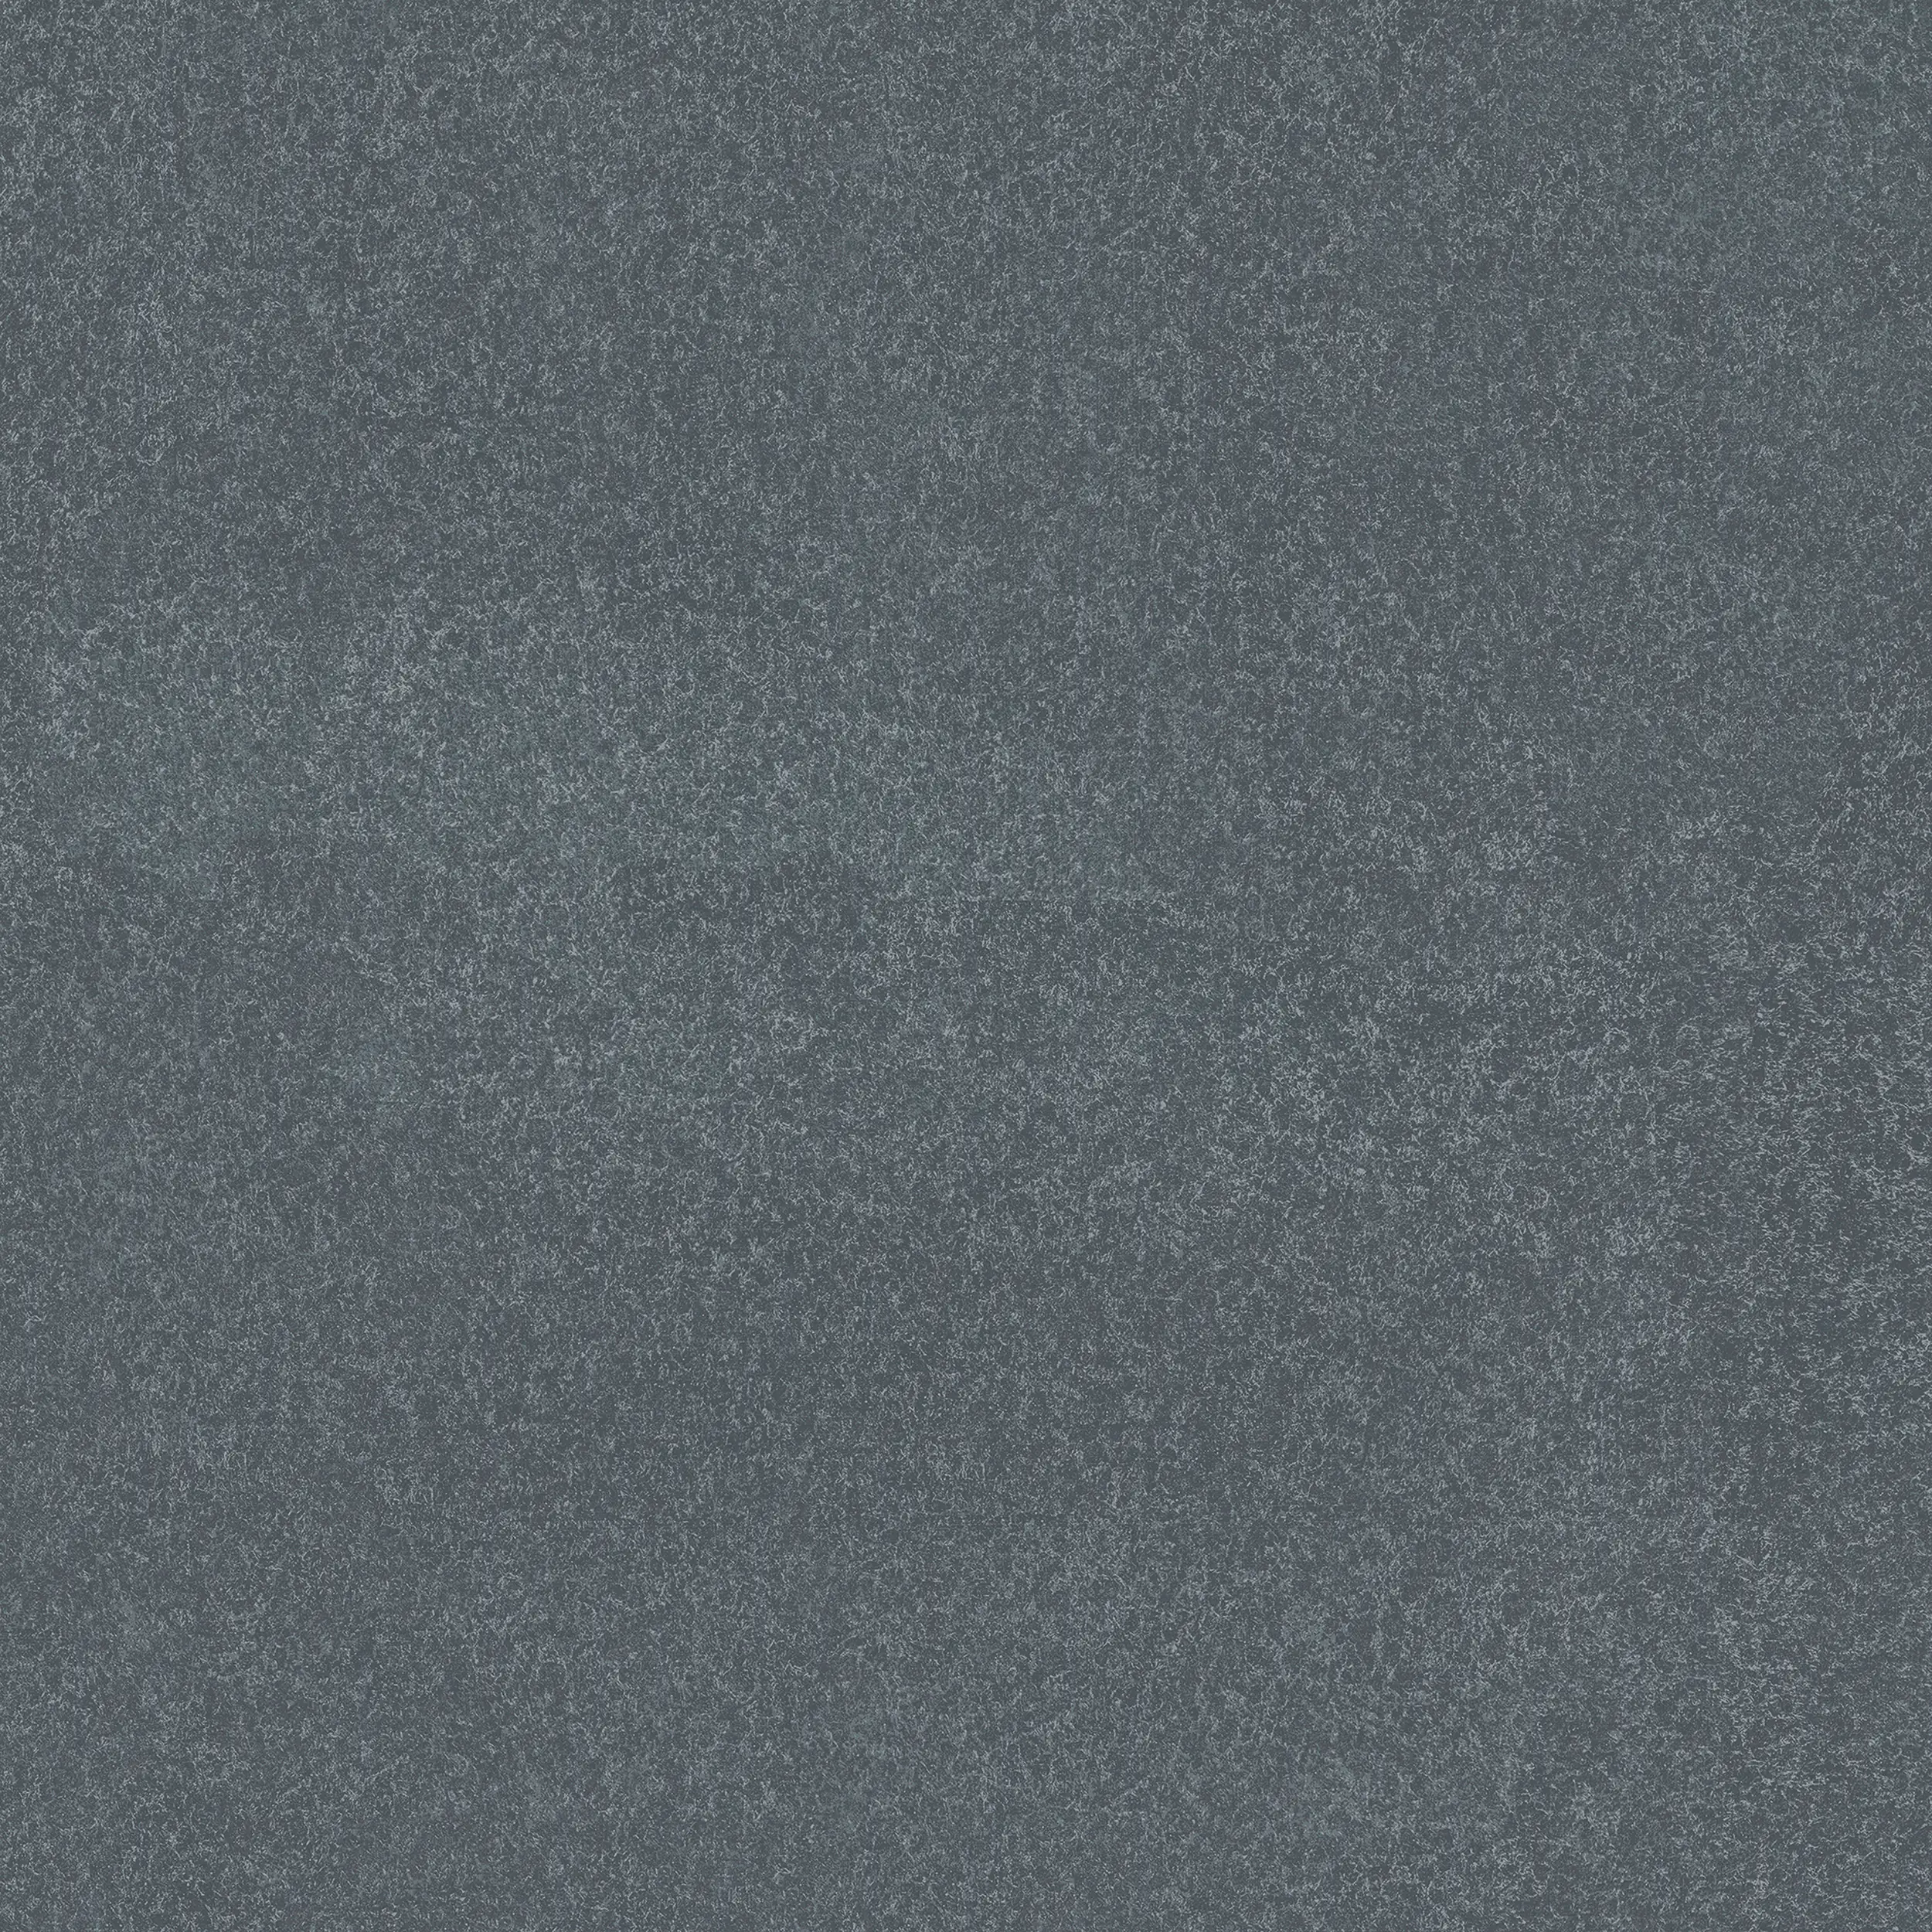 Terrassenplatte Feinsteinzeug Basalt Stone 60 Globus | Baumarkt cm kaufen grau x 60 3 x